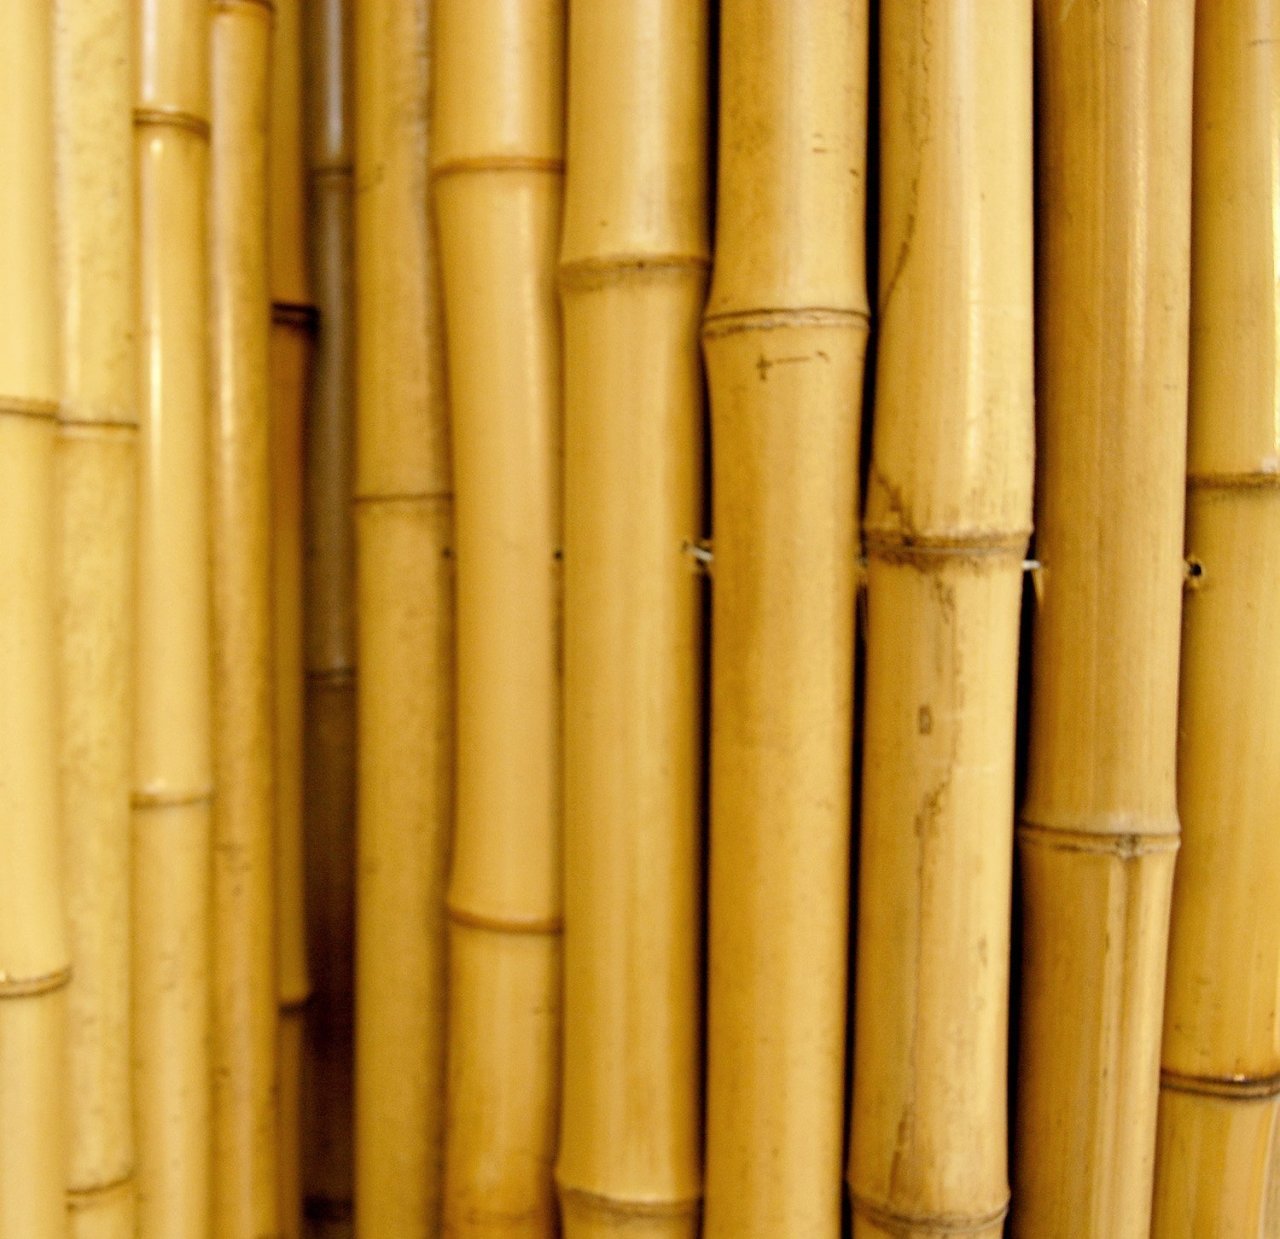 Bahçem Kalın Bambu Çubuğu 7-8 Cm 3 Metre 5 Adet